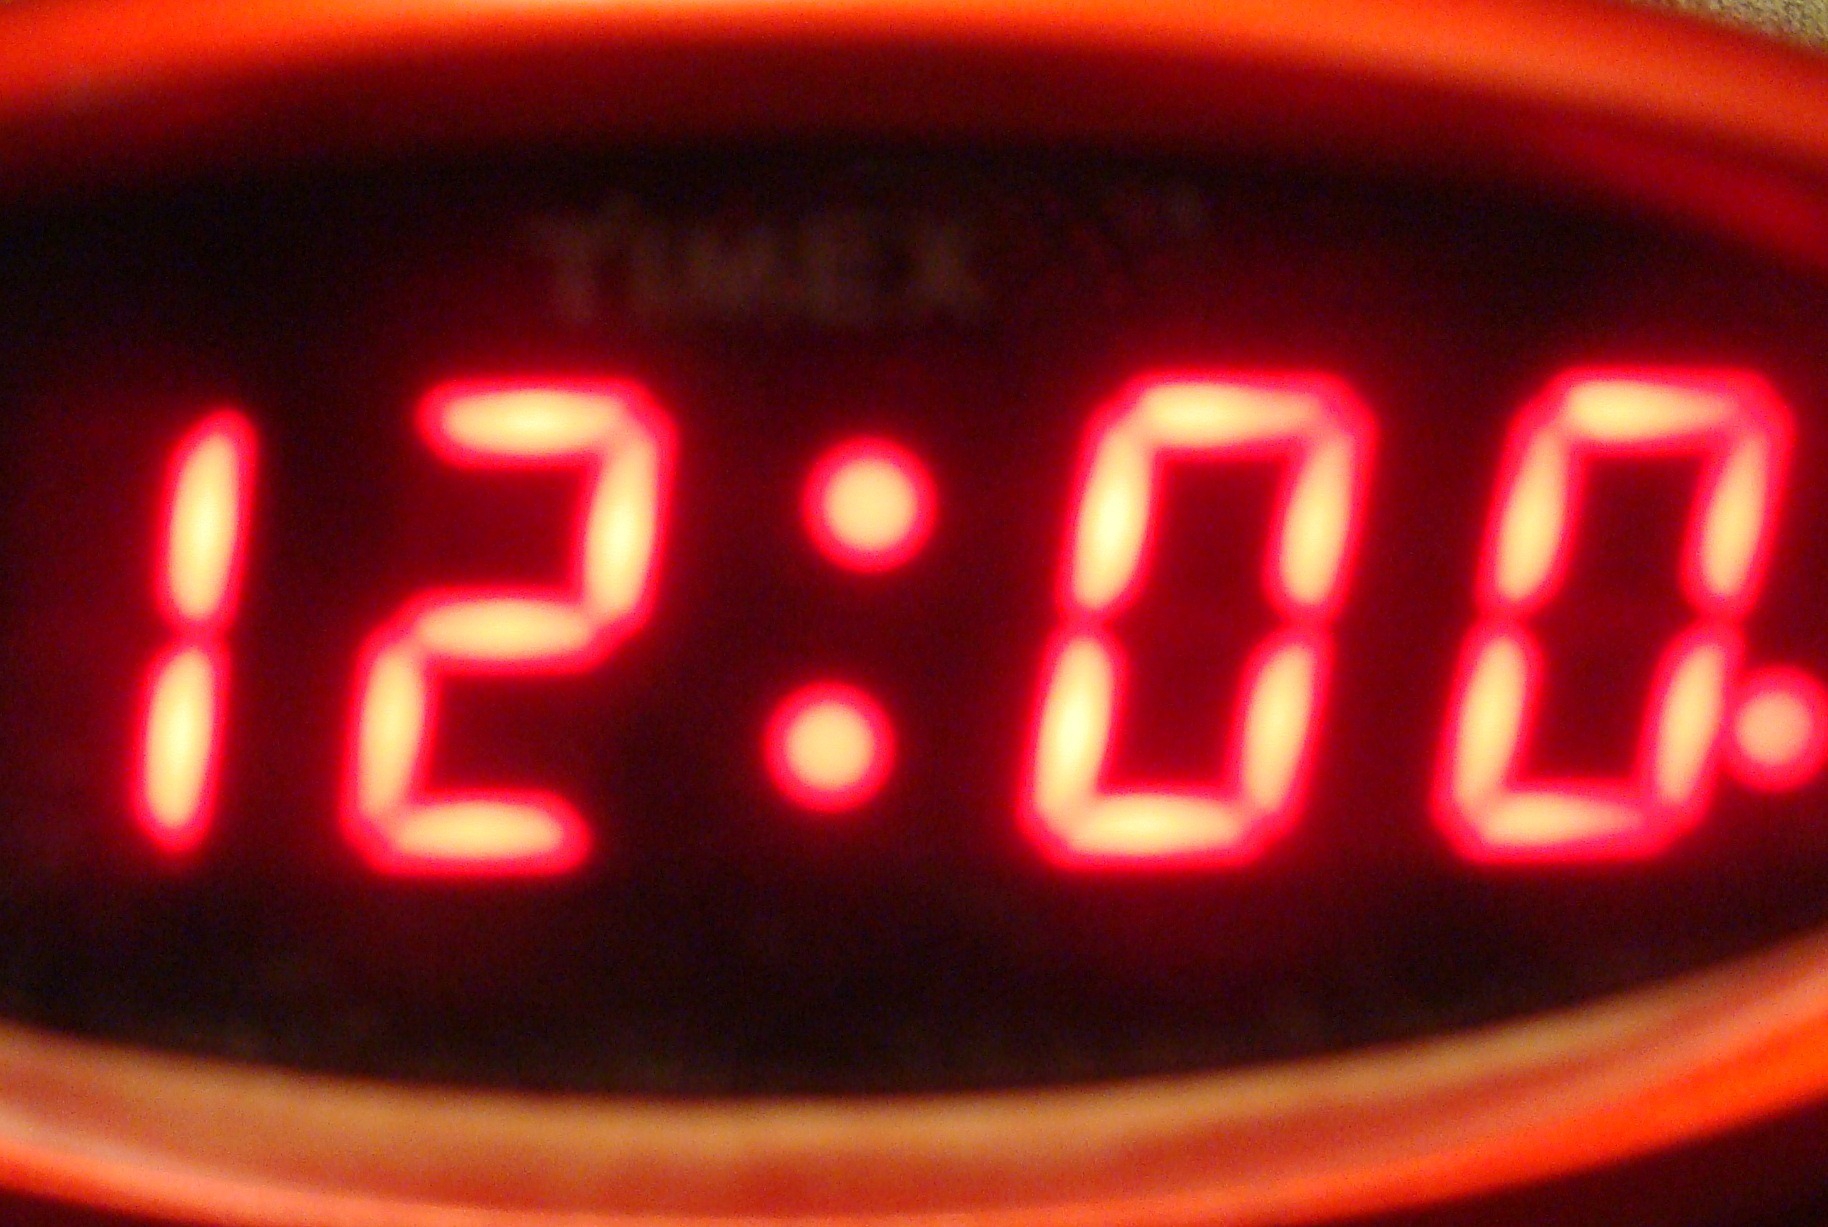 120 часов 12 часов. Электронные часы 12 00. Часы показывают 12 00. Электронные часы полночь. Электронные часы 12 часов ночи.